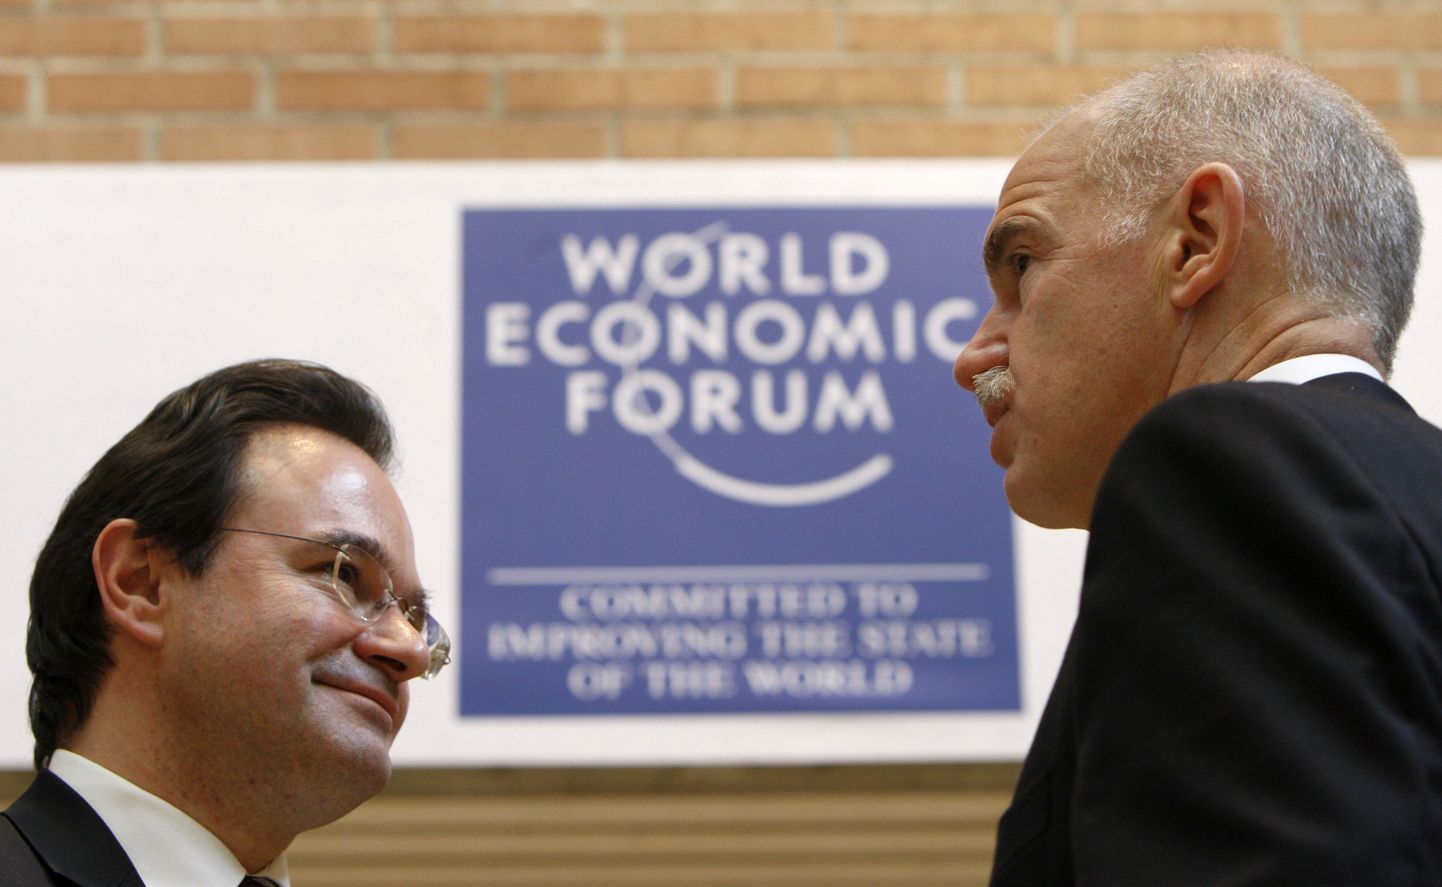 Kreeka peaminister George Papandreou (paremal) ja rahandusminister George Papaconstantinou 29.jaanuaril Davosis Maailma Majandusfoorumil  vestlemas.